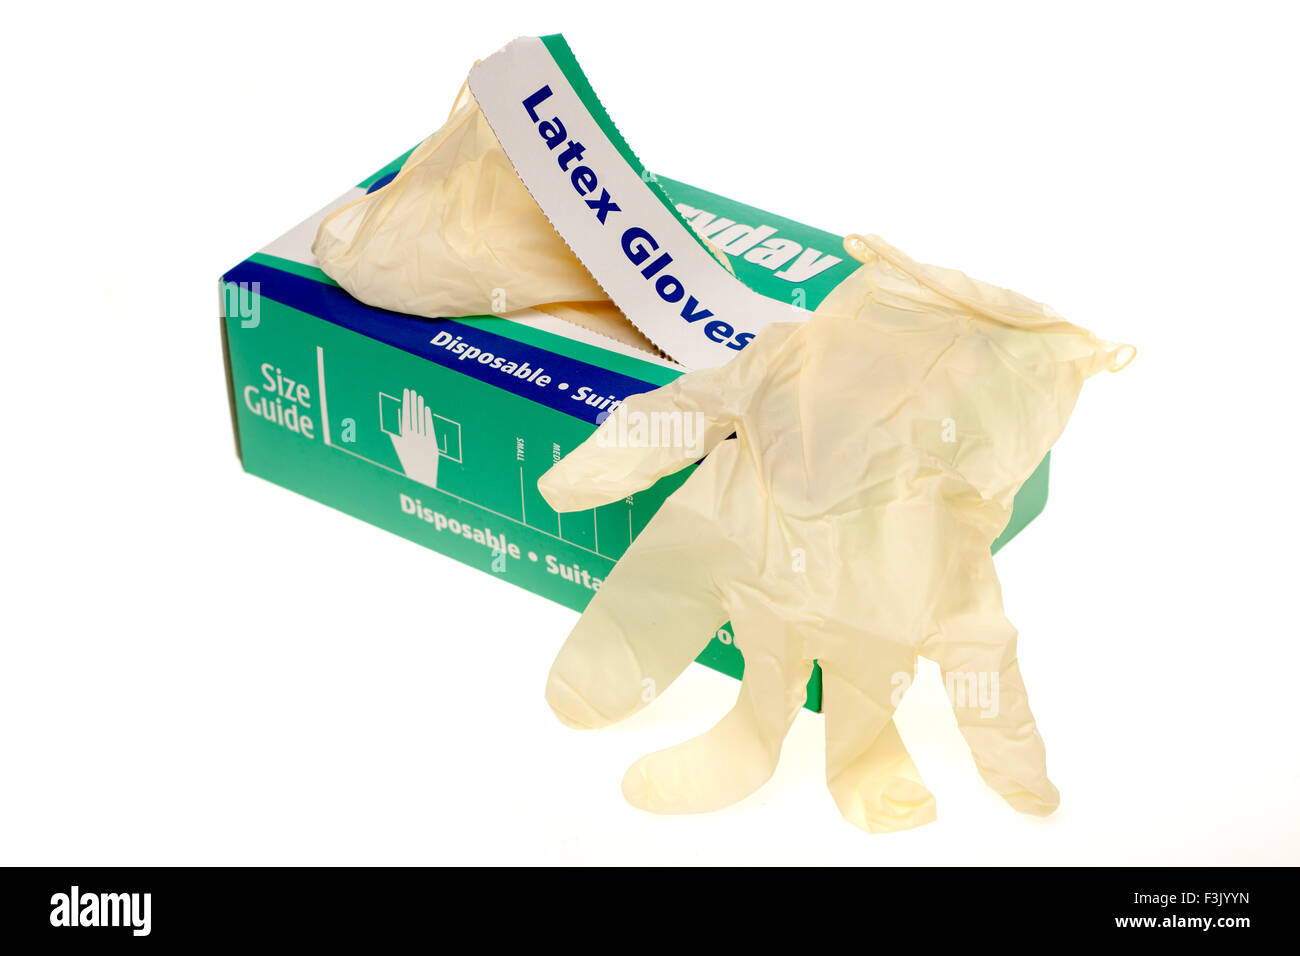 Caja de 100 Everdayday libre de polvo desechables guantes de látex grande Foto de stock